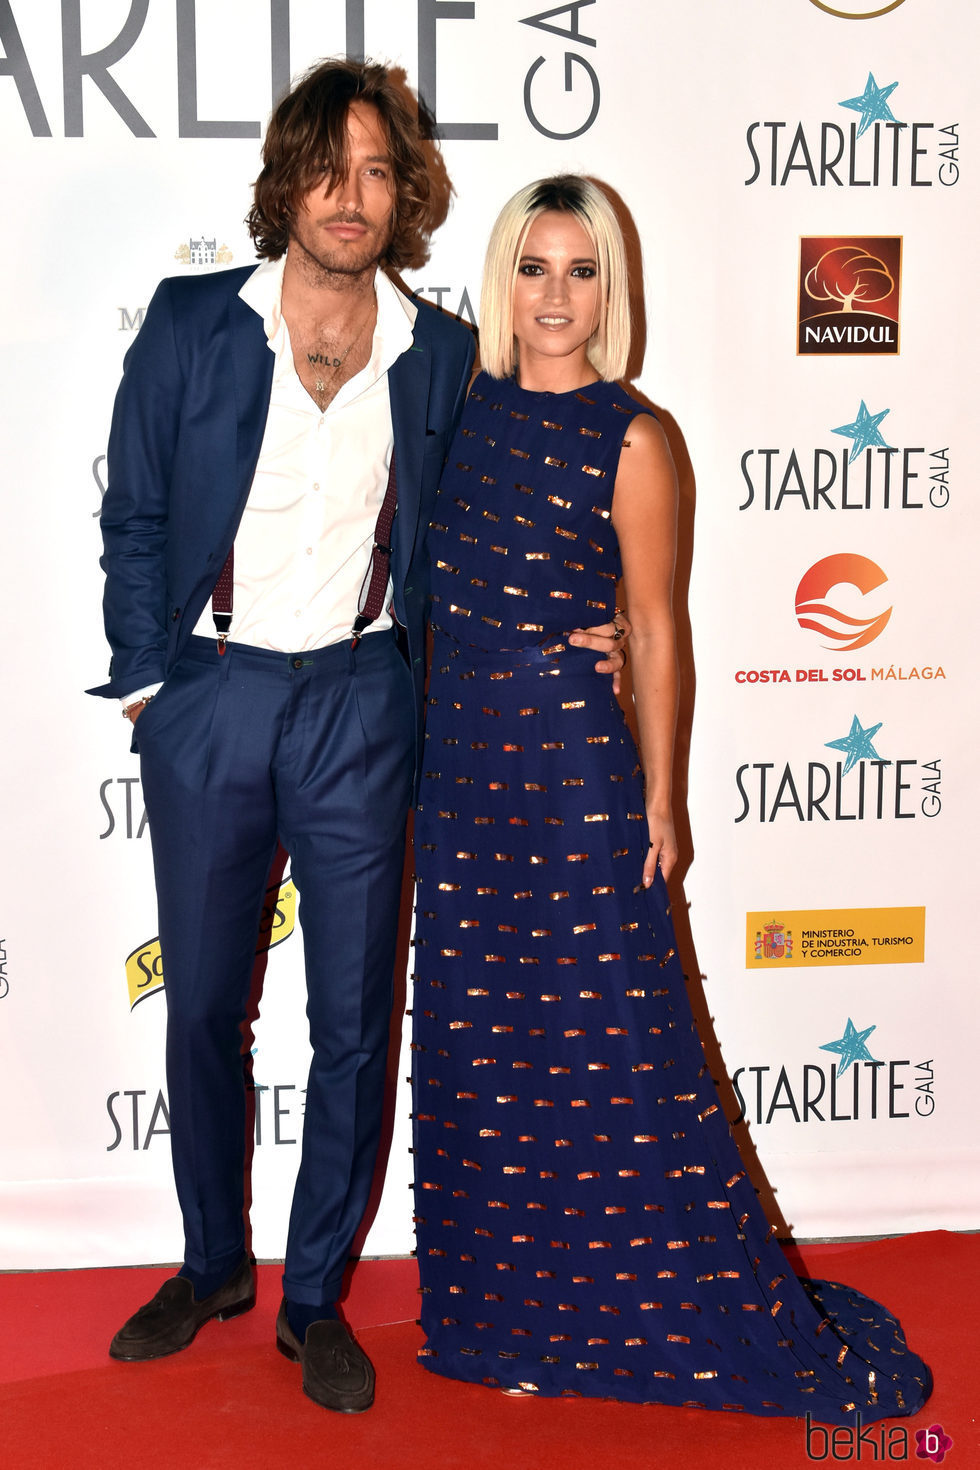 Ana Fernández y Adrián Roma en la Gala Starlite 2017 en Marbella